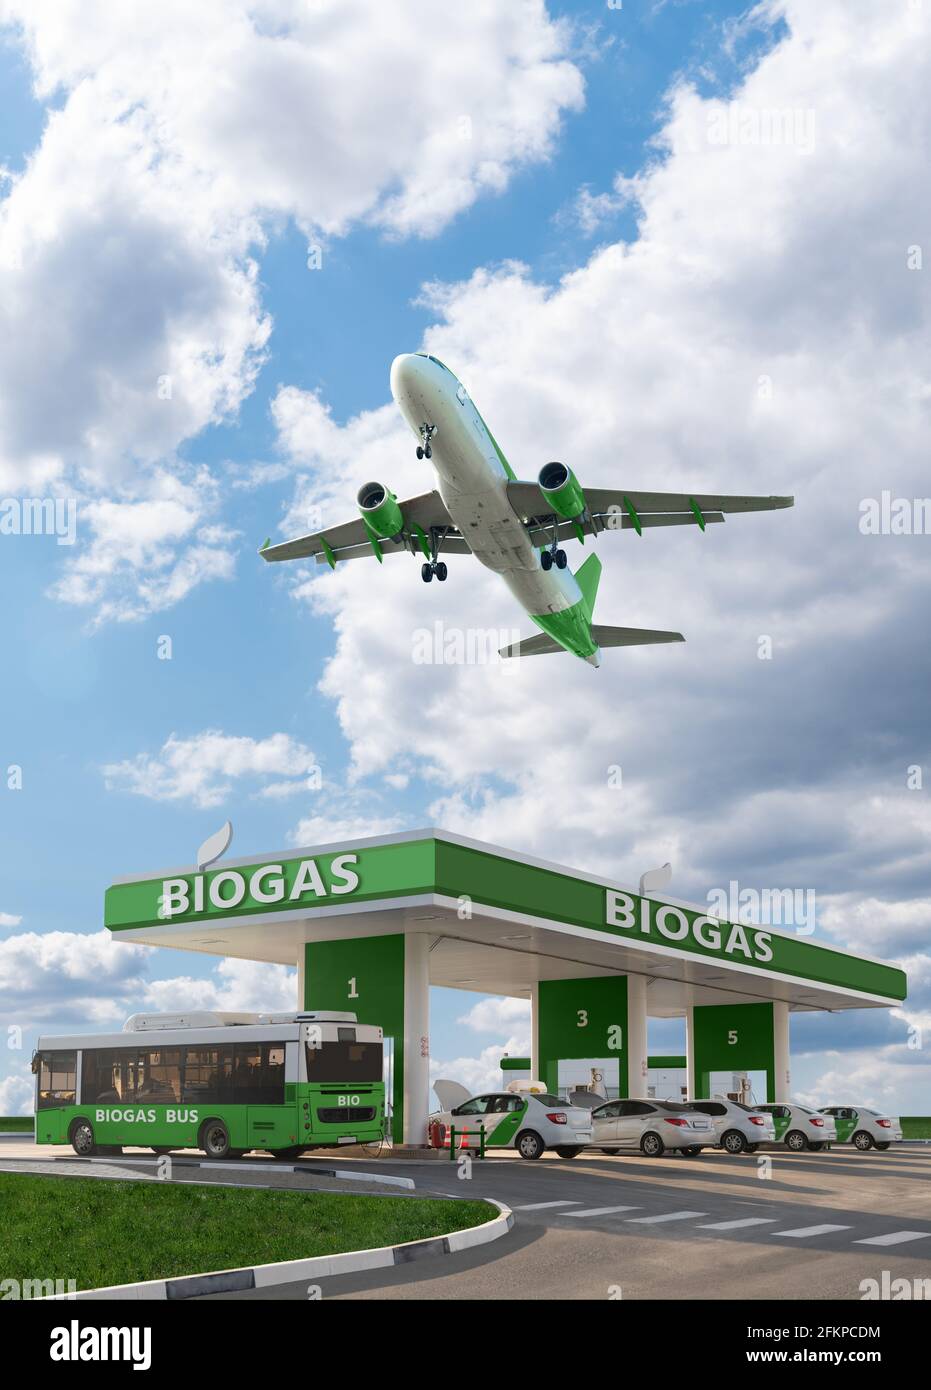 L'avion vole au-dessus de la station de biogaz. Concept de transport neutre en carbone Banque D'Images